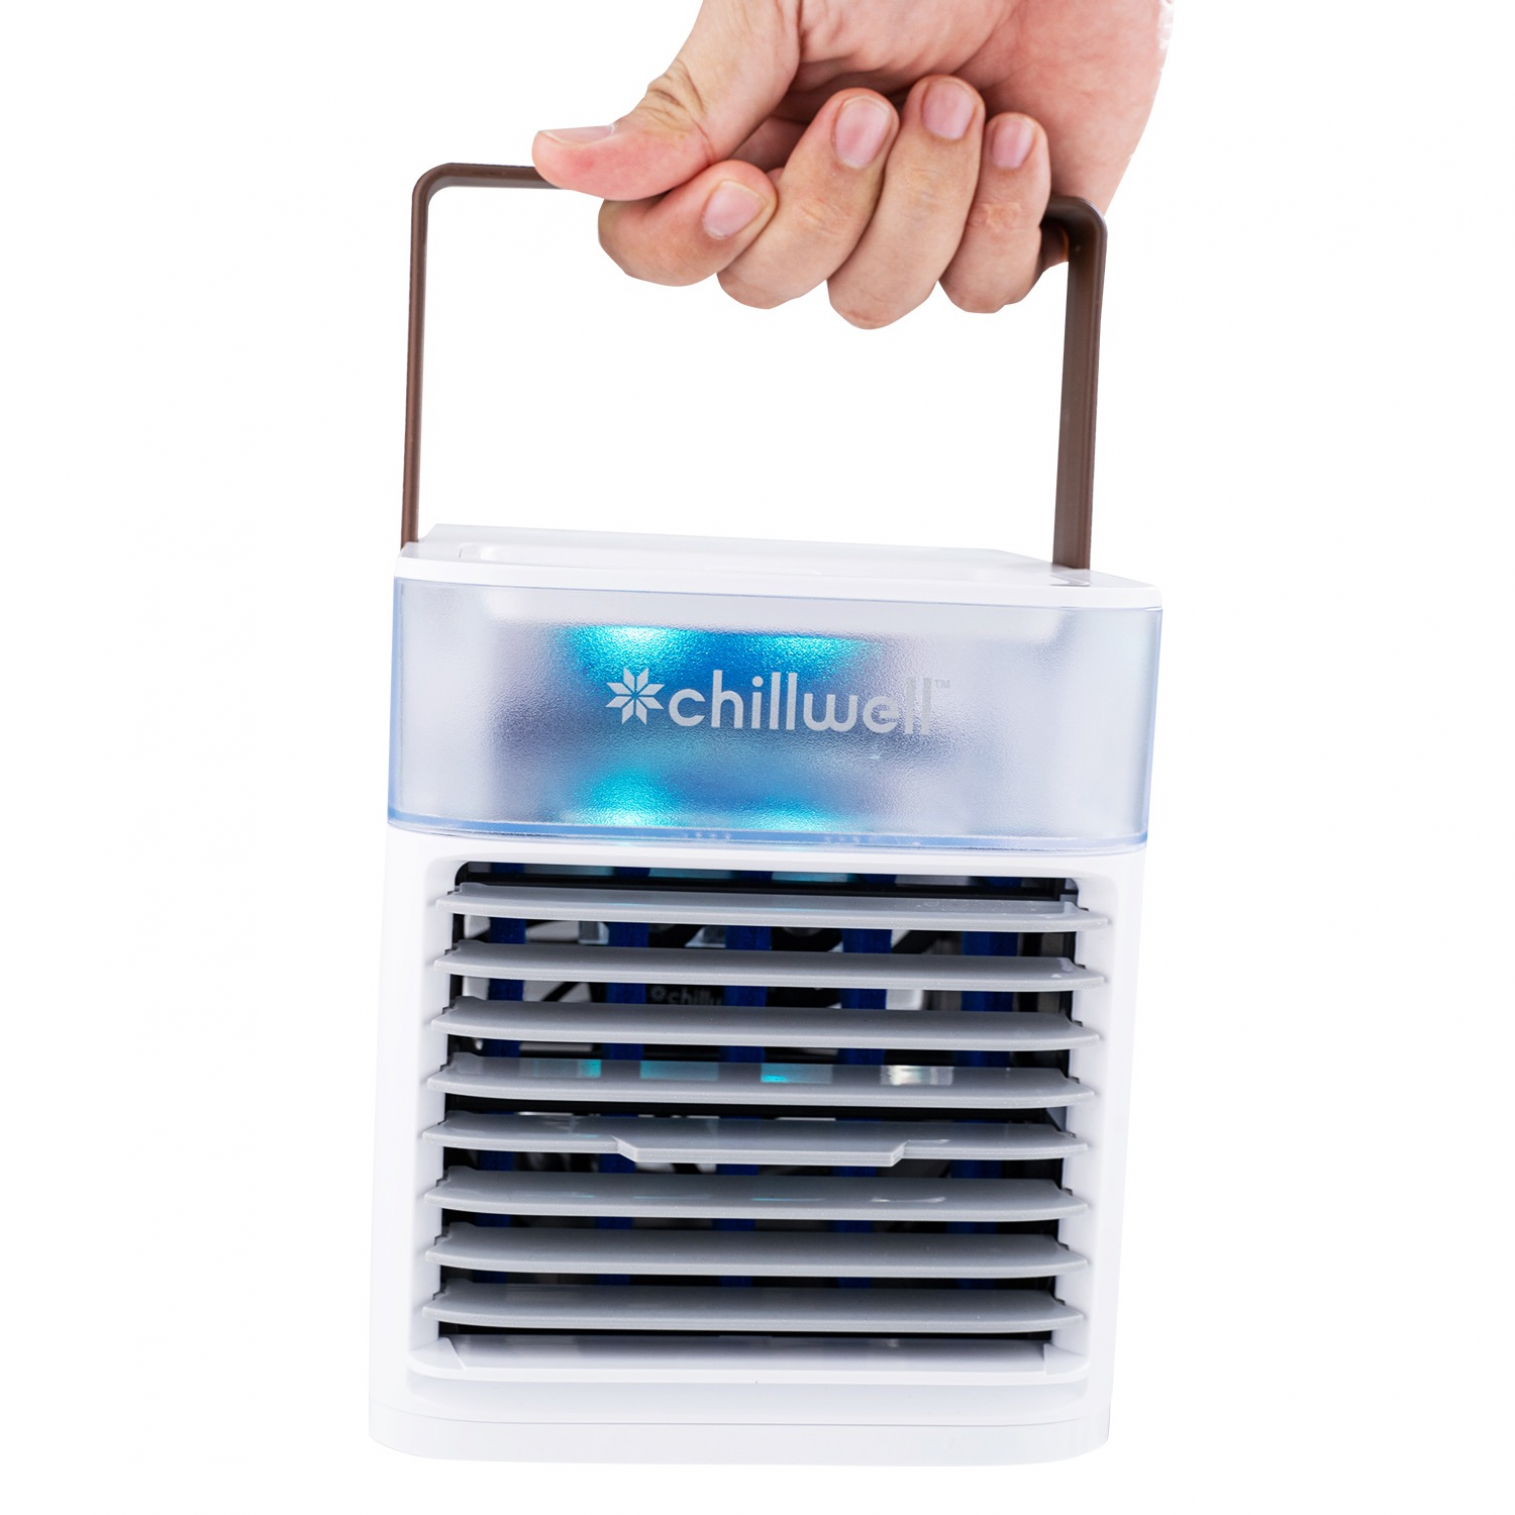 Chillwell AC Box